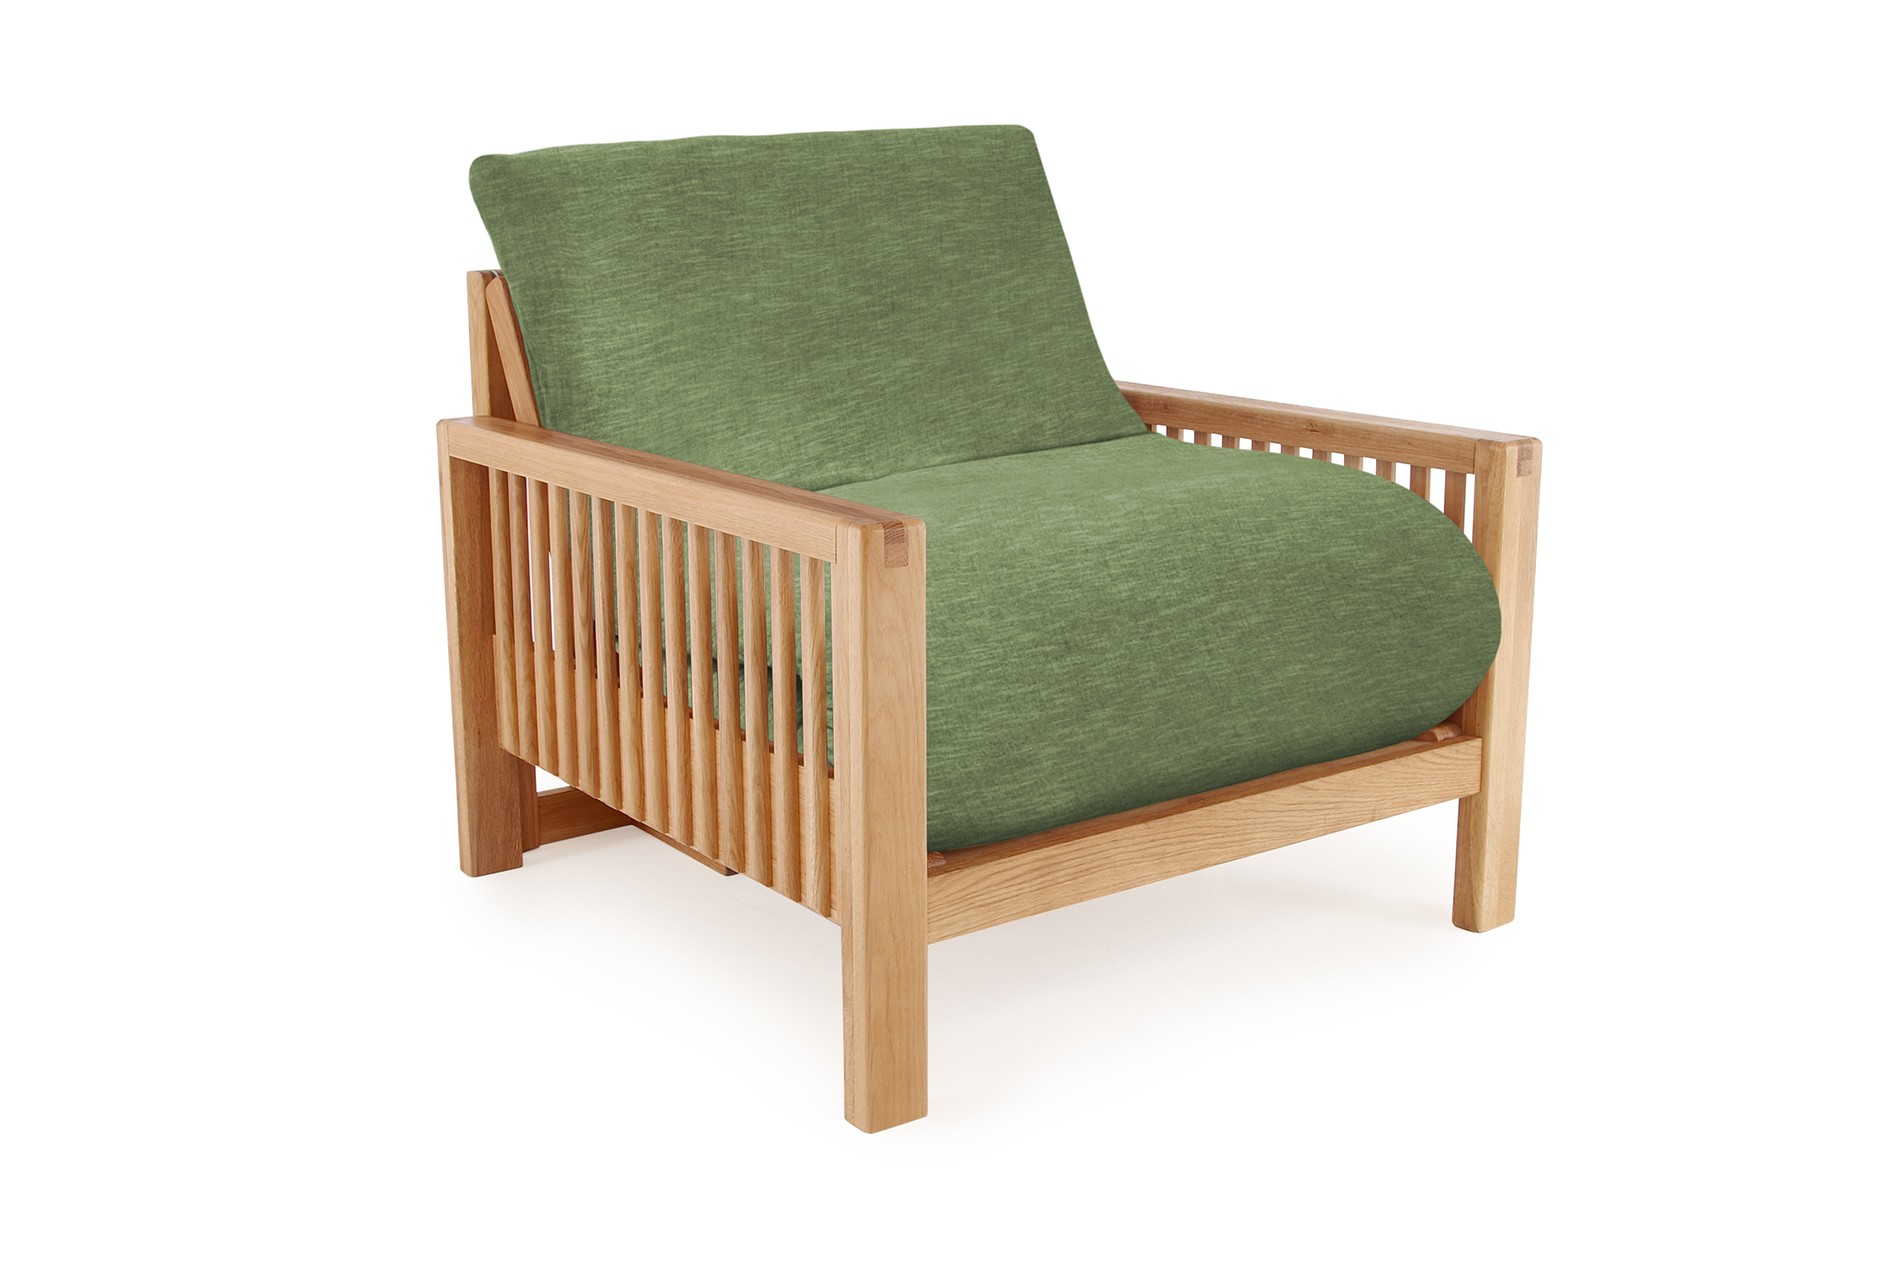 Oak Rondo Seat Sofa Bed Coast Weave Sea Foam Green